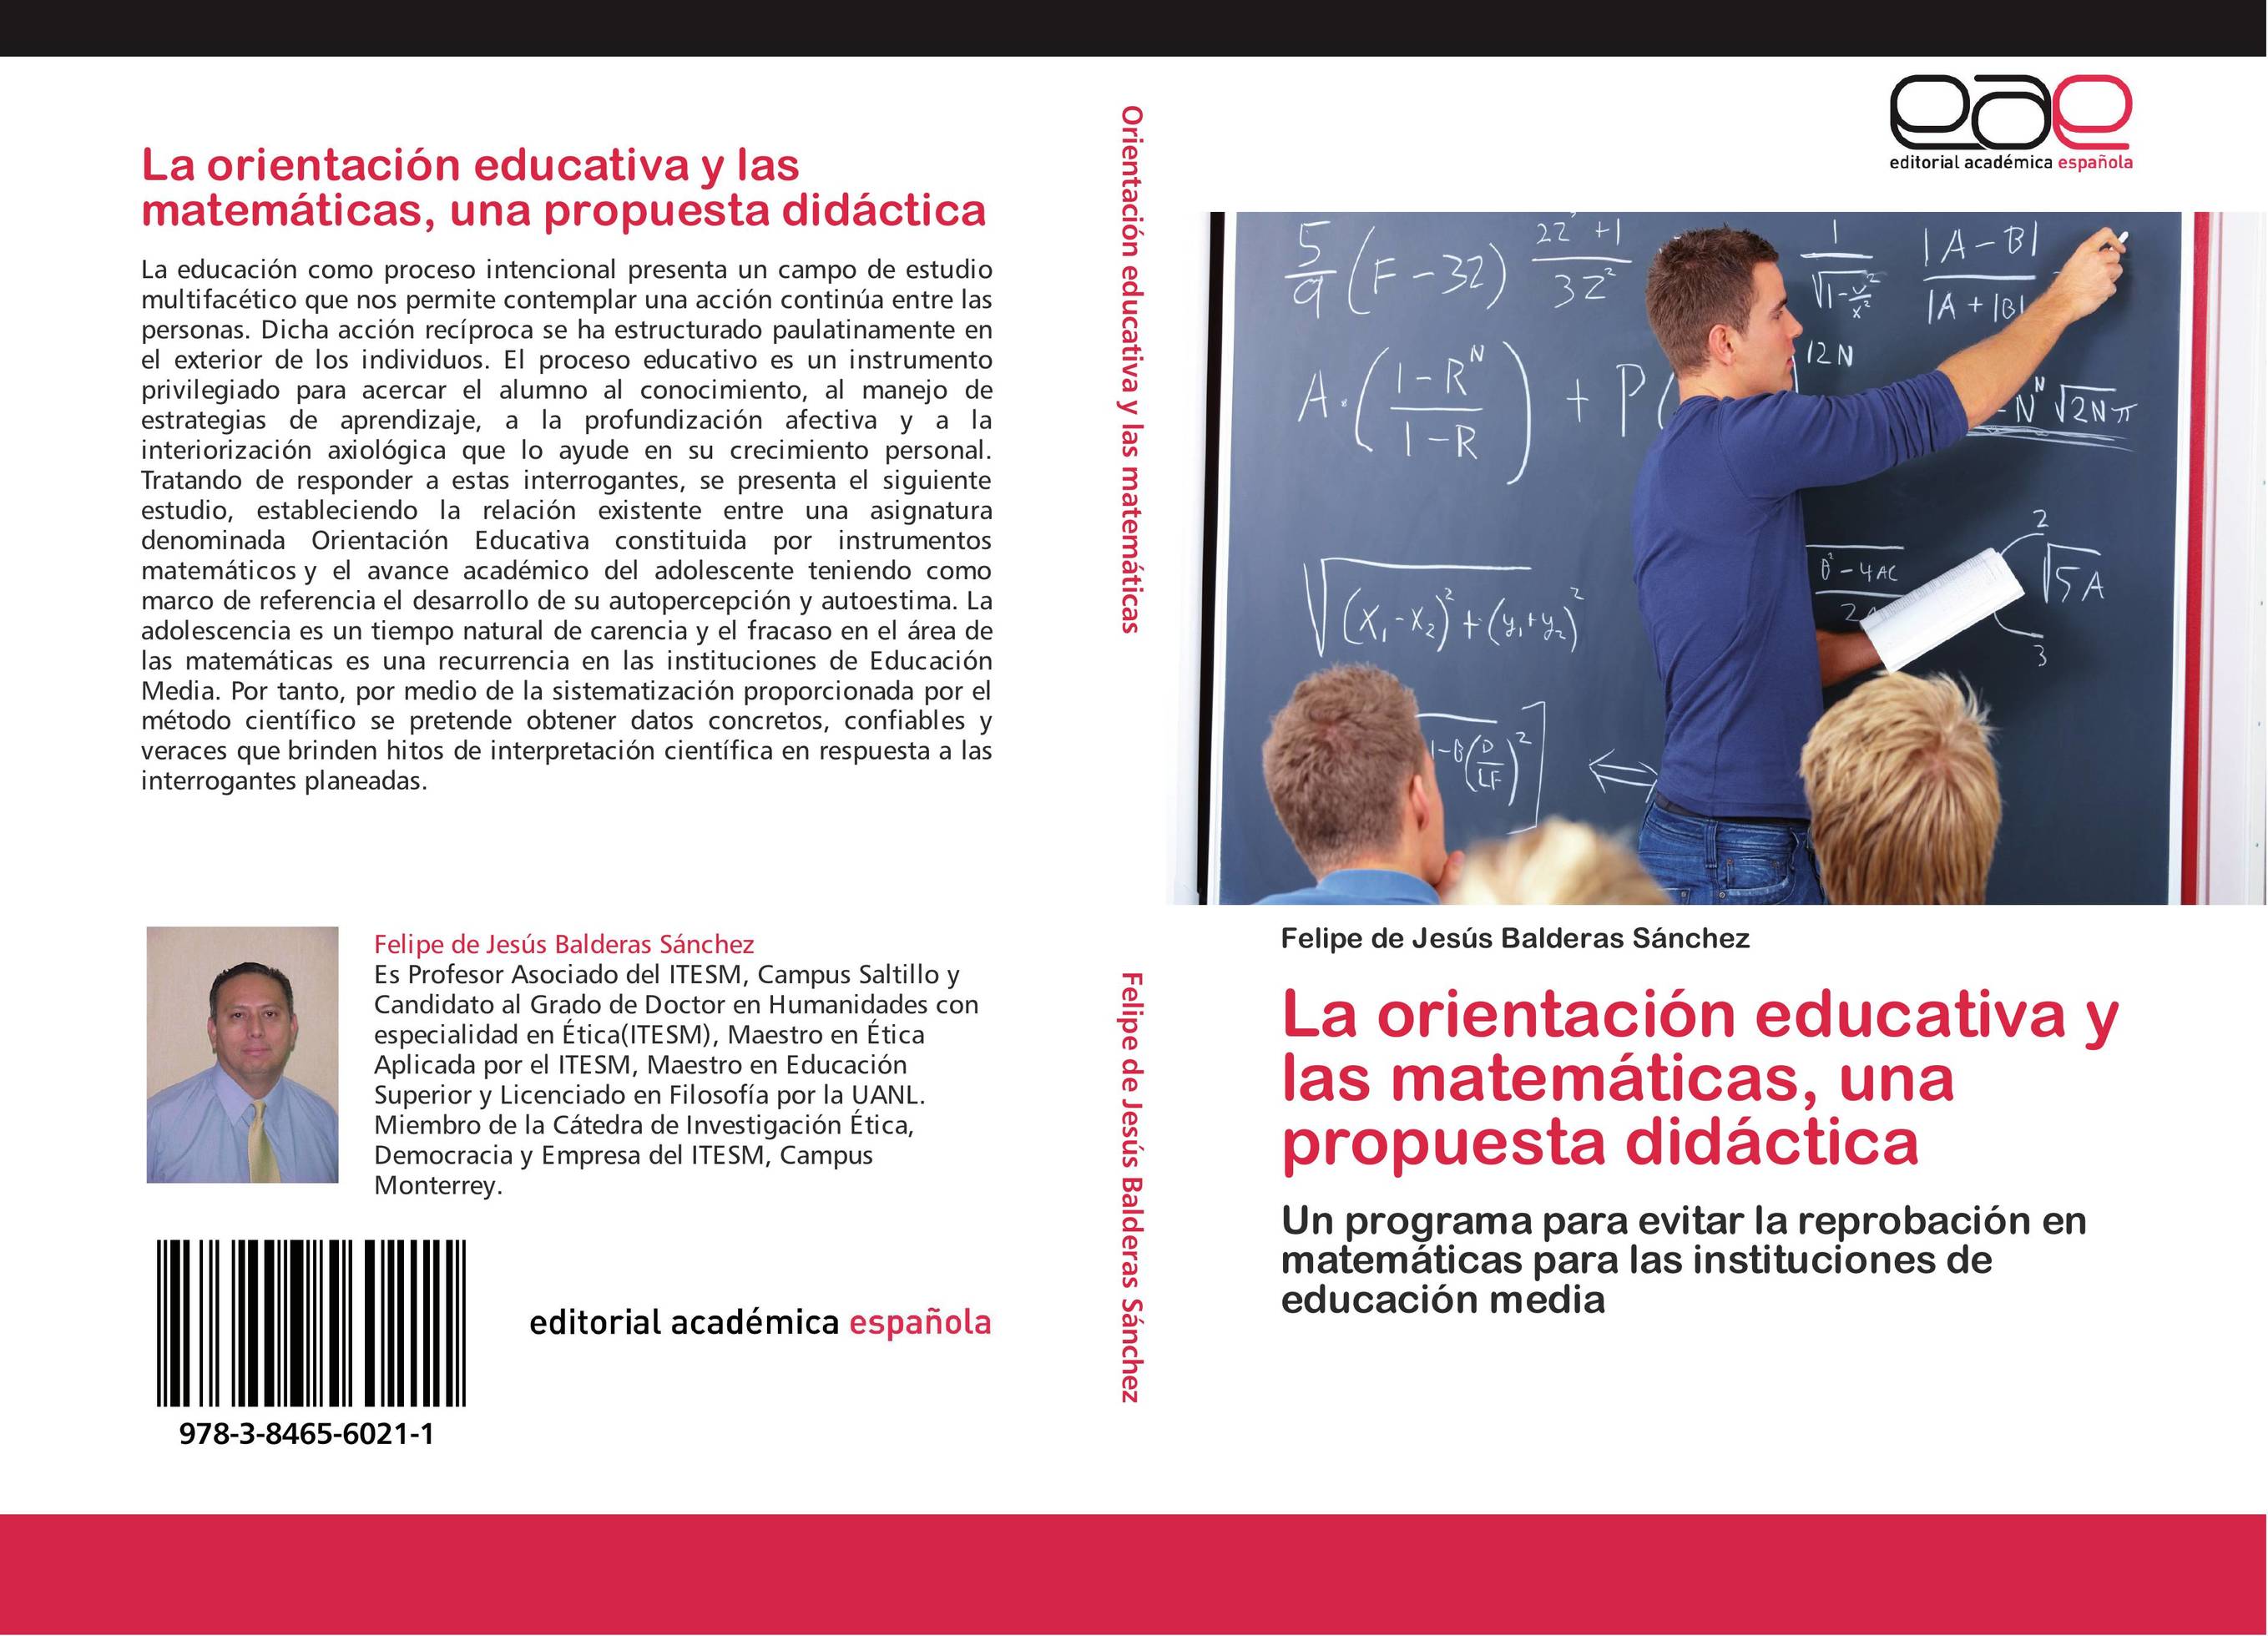 La orientación educativa y las matemáticas, una propuesta didáctica